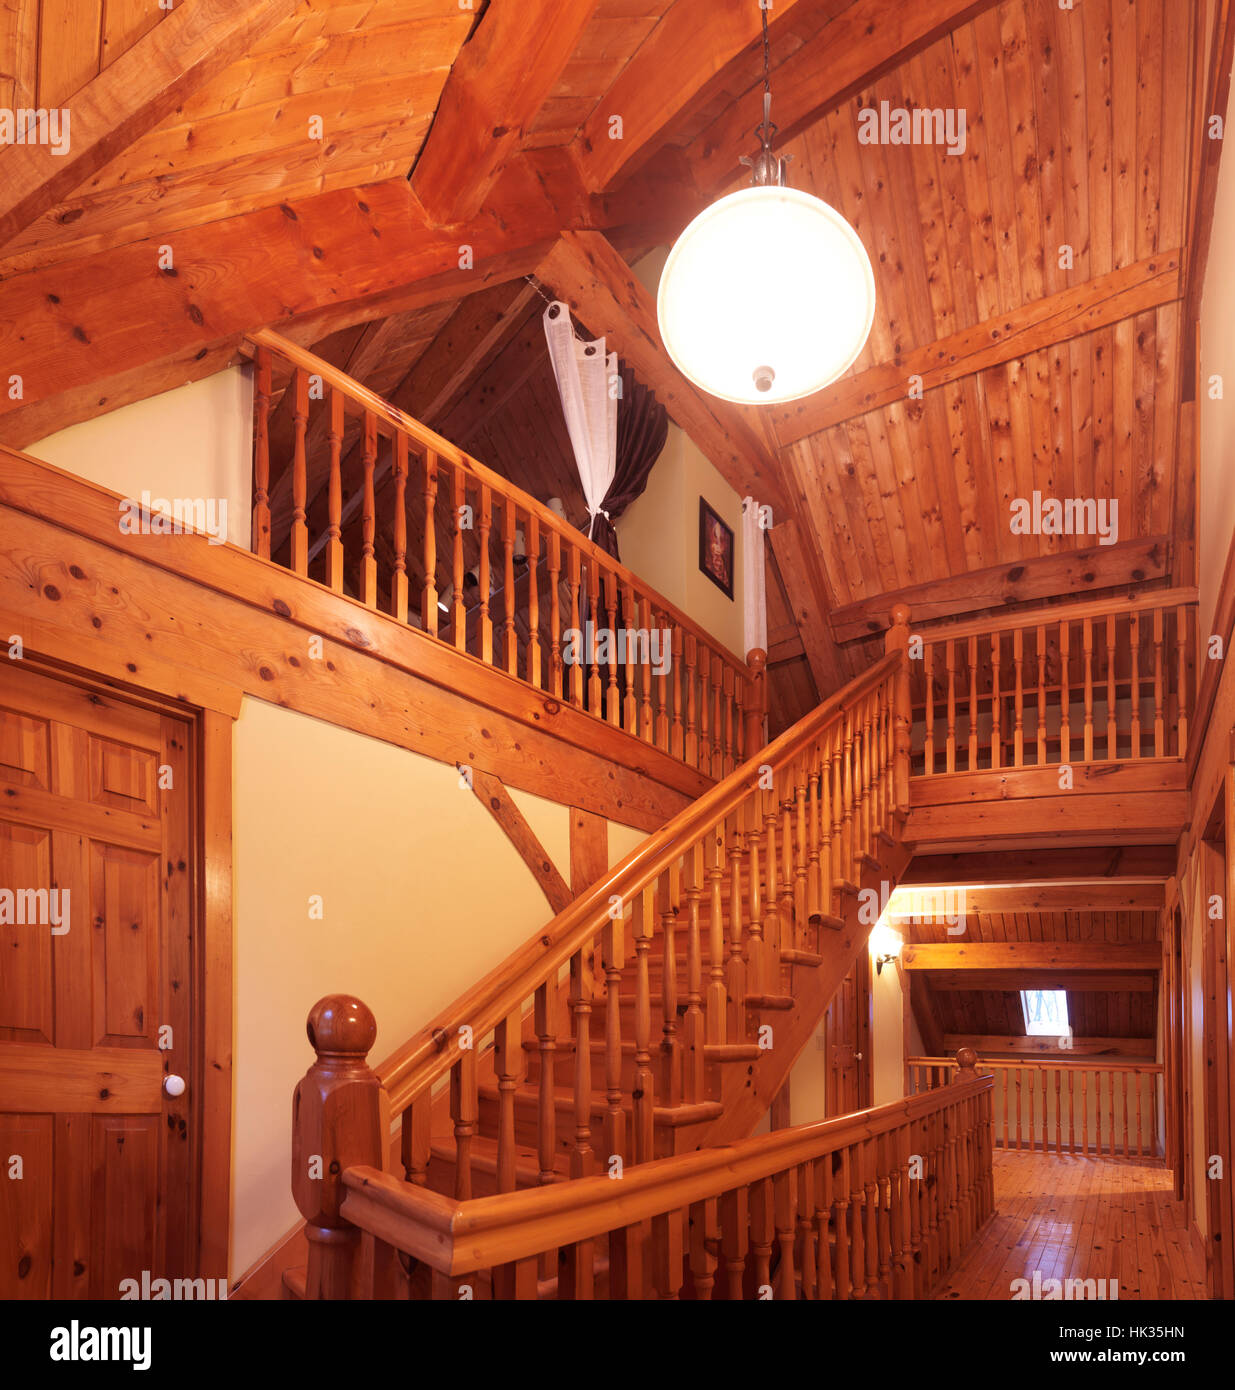 Holz Rahmen Hütte kanadischen Land Haus Interieur mit einer Holztreppe führt auf den Dachboden, Muskoka, Ontario, Kanada Stockfoto